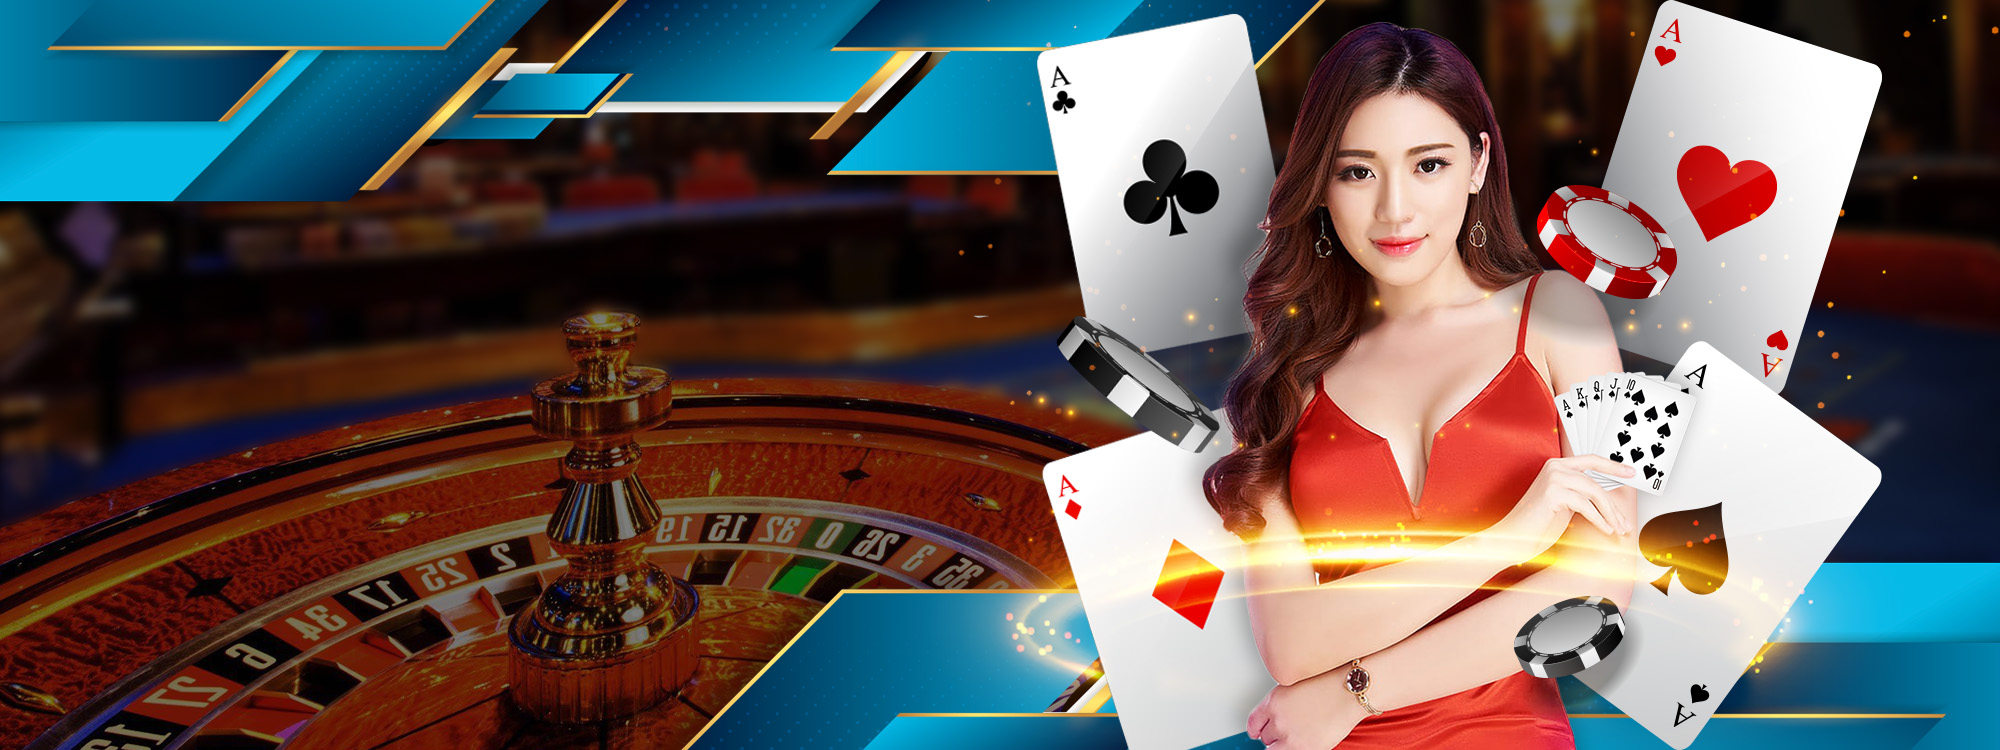 Casino Online | Junebet66 SG